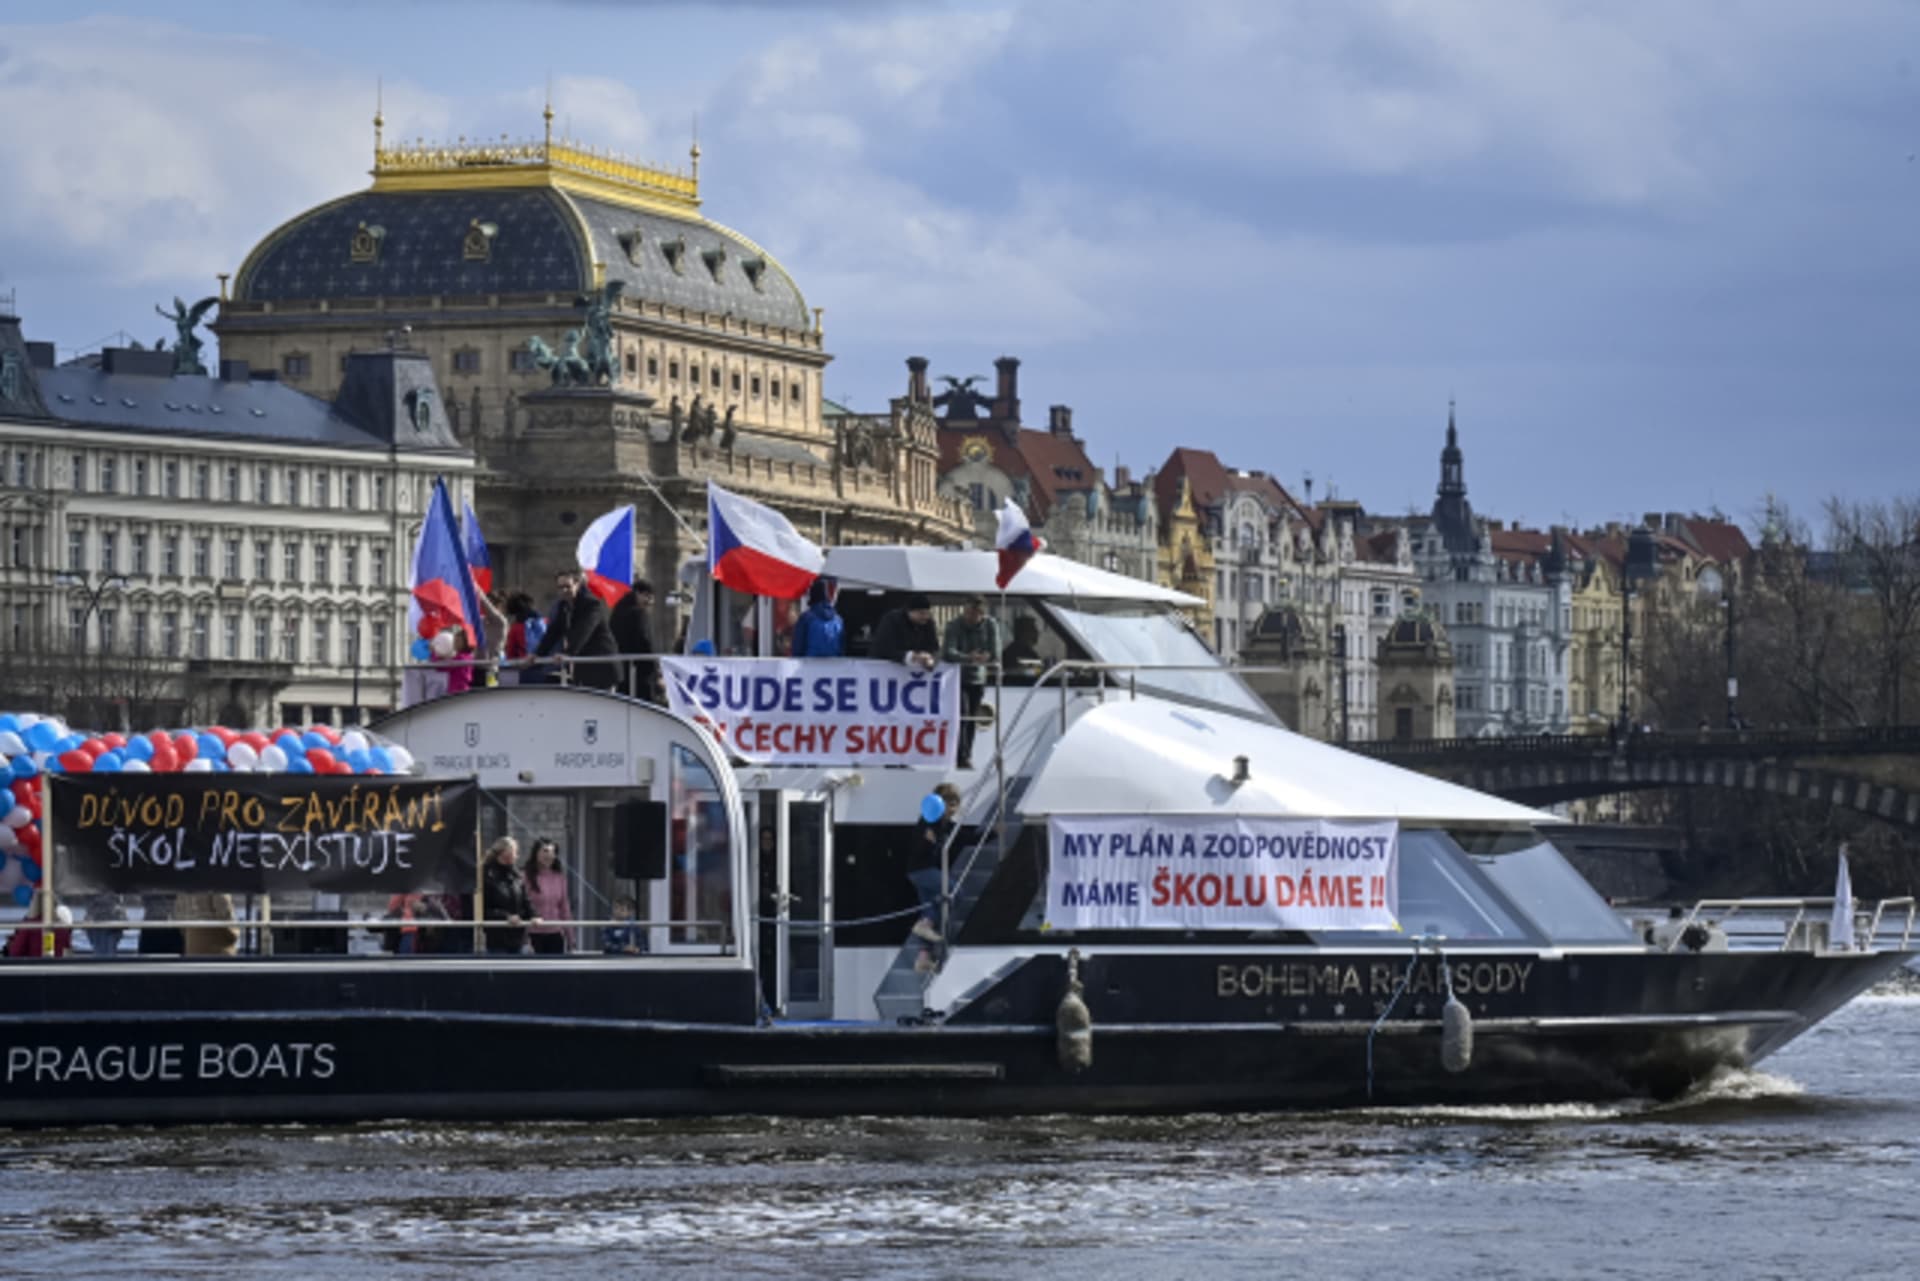 Na Vltavu vyplulo osm lodí s transparenty jako protest proti uzávěře škol za nouzového stavu.